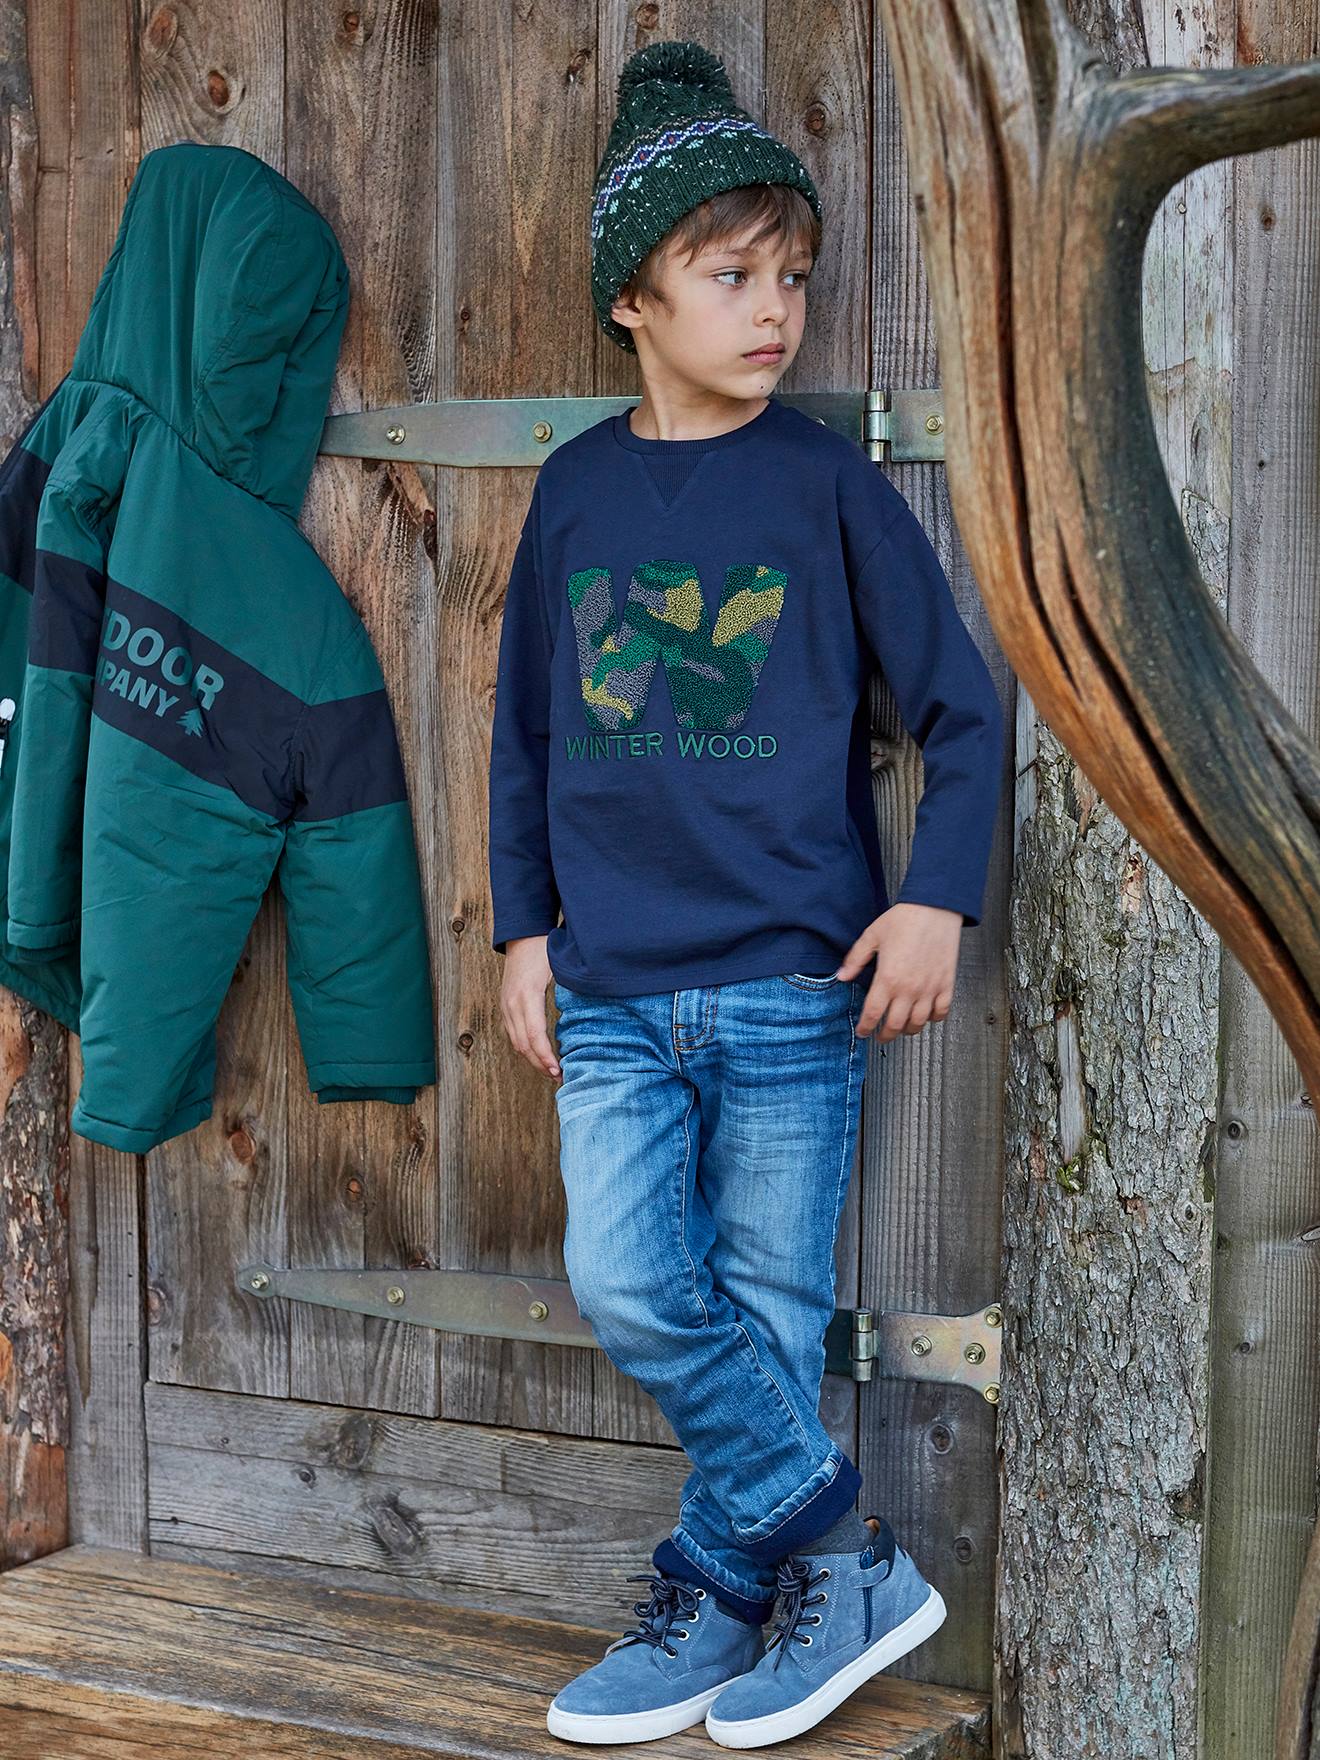 T-shirt winter wood garçon détails en bouclettes et brodés navy